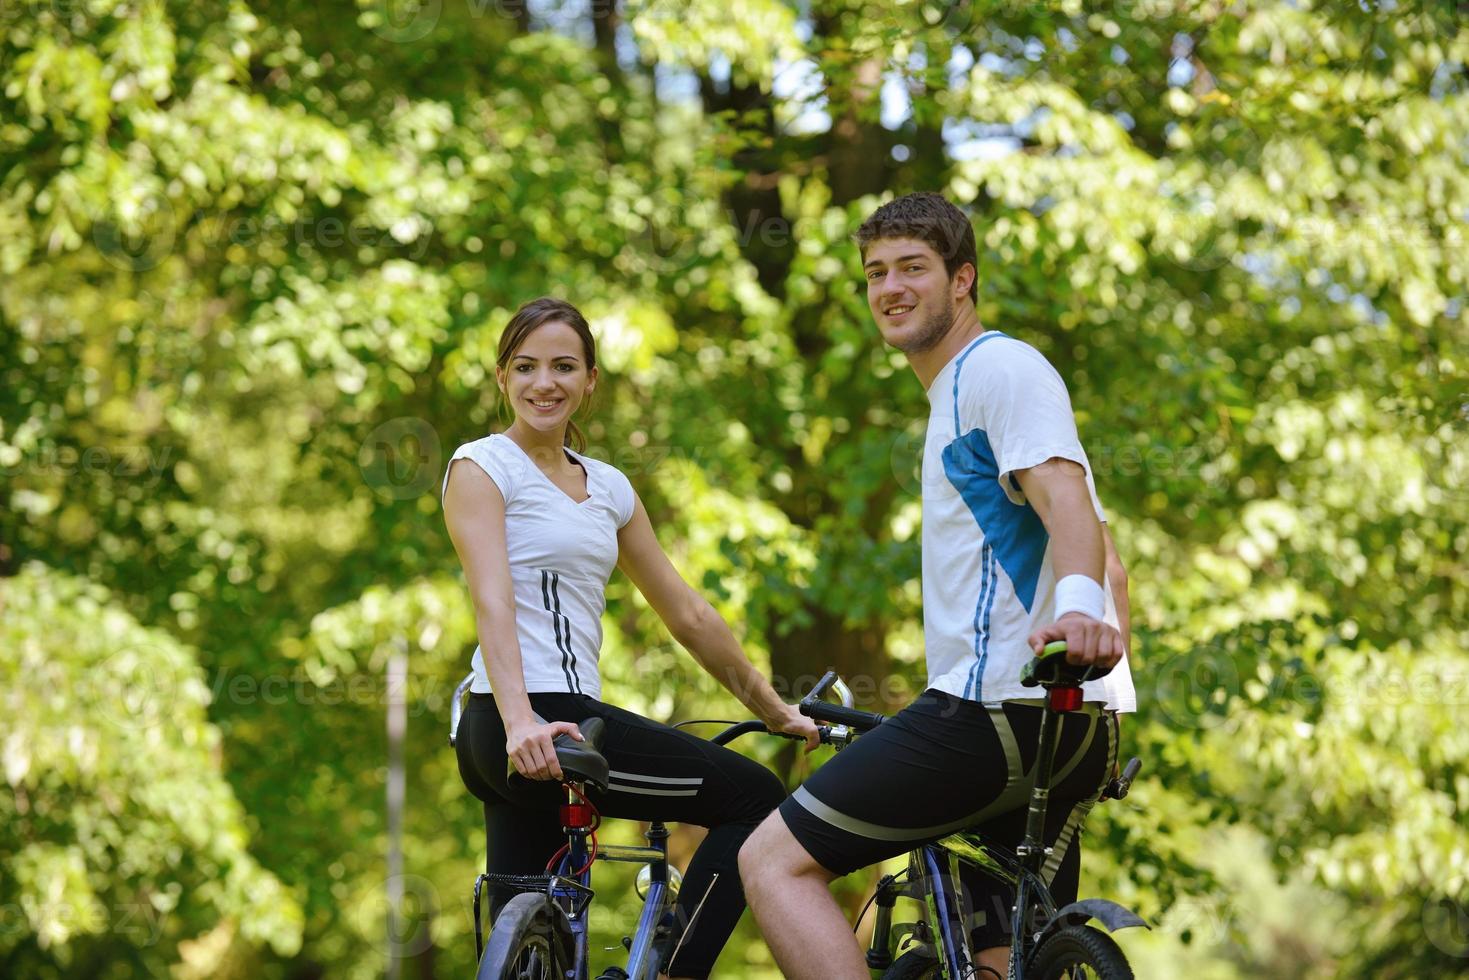 lyckligt par som cyklar utomhus foto